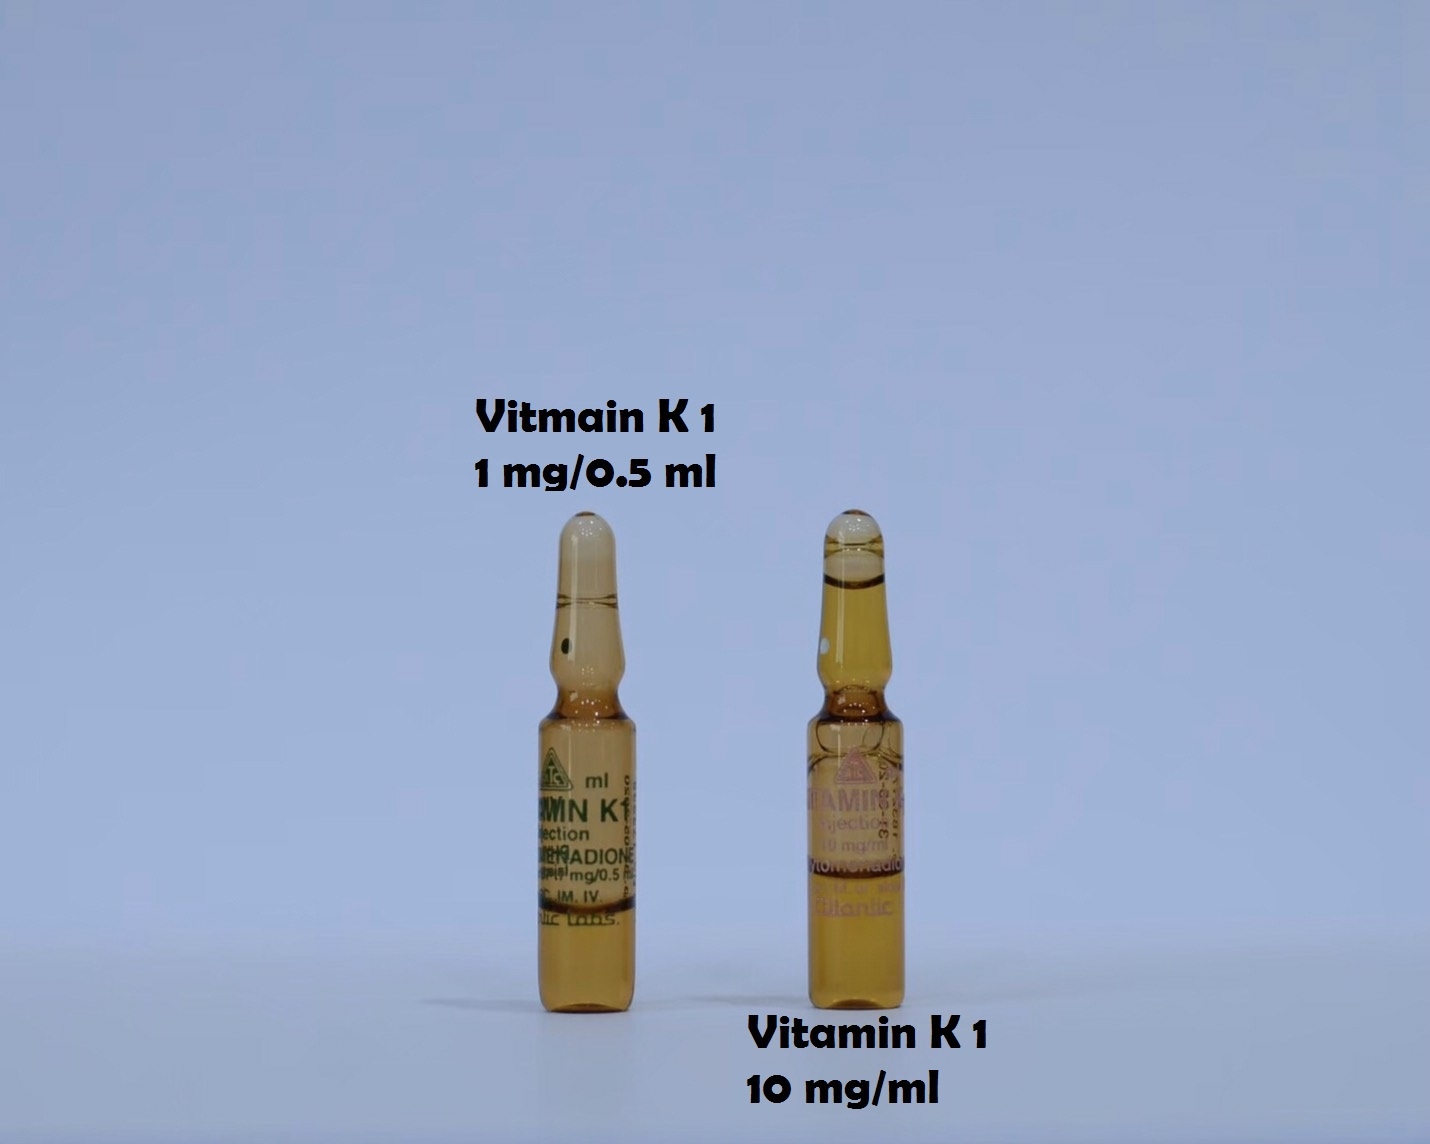 ยาที่มีหลายความแรง : Vitamin K1 1mg/0.5ml  และ Vitamin K1 10mg/ml